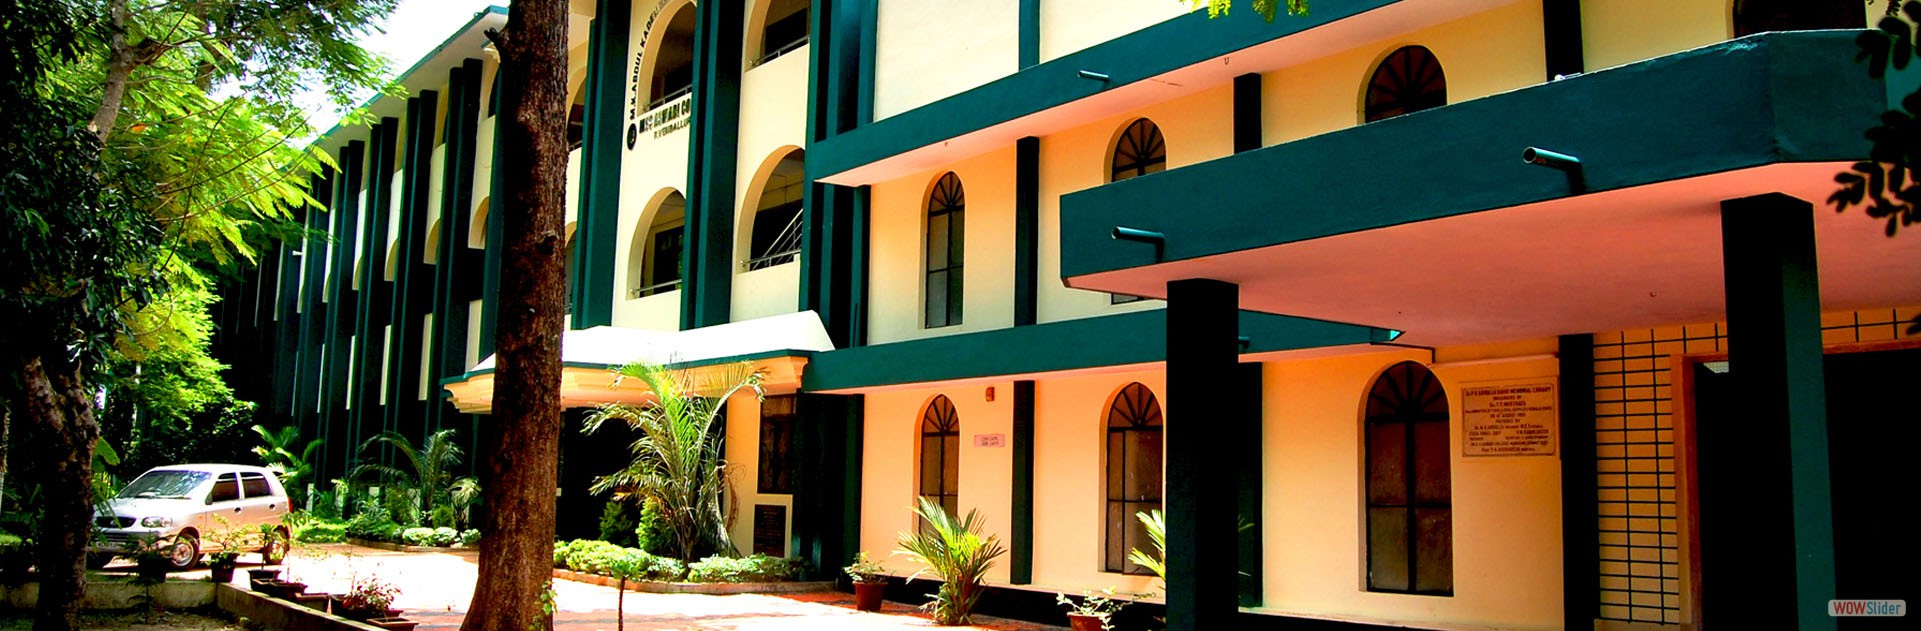 M.E.S Asmabi College, Thrissur Image